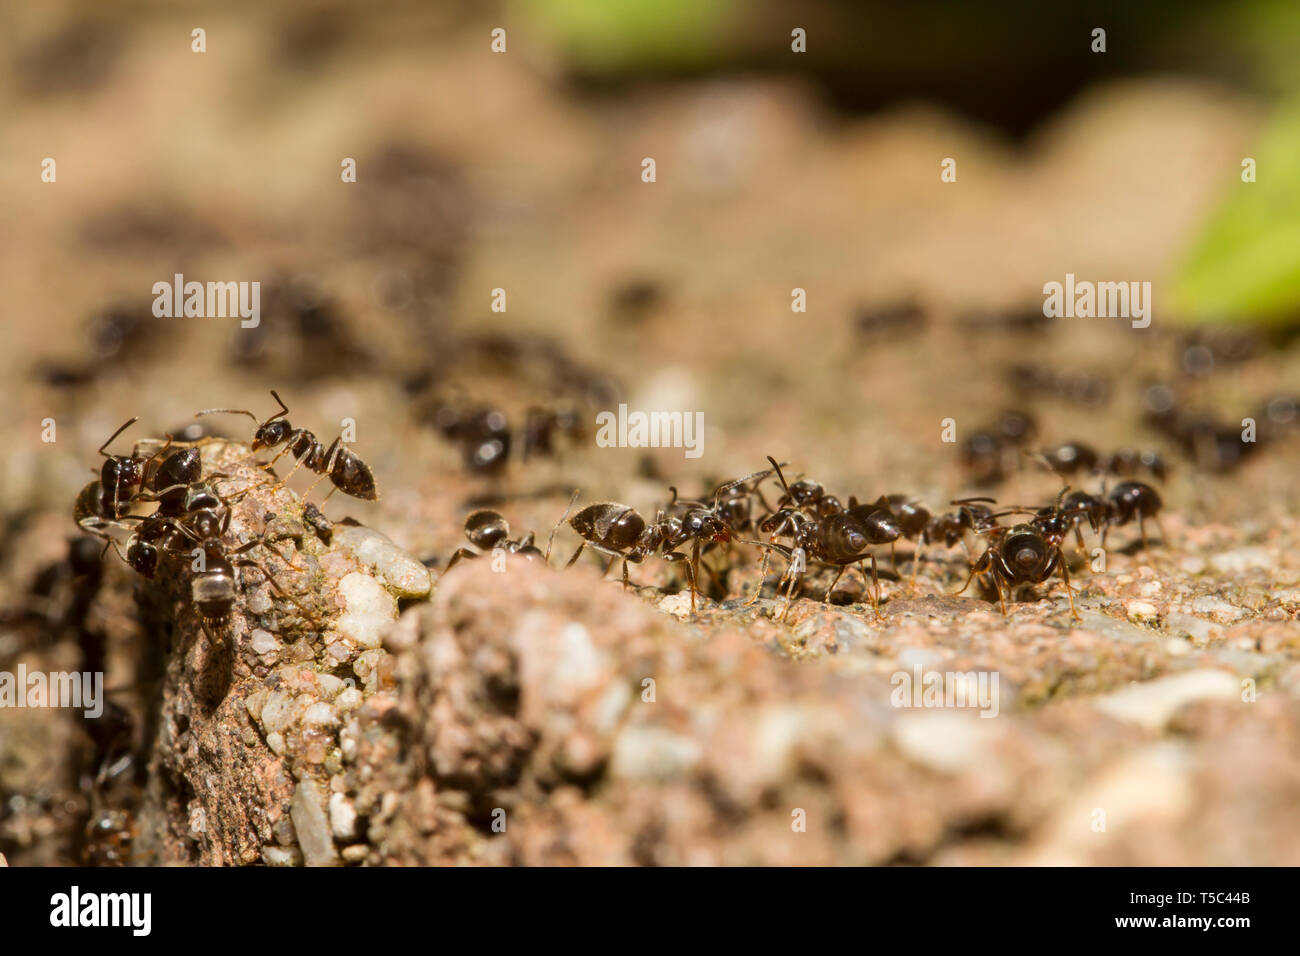 Ameisen, Formicidae, hormigas Foto de stock